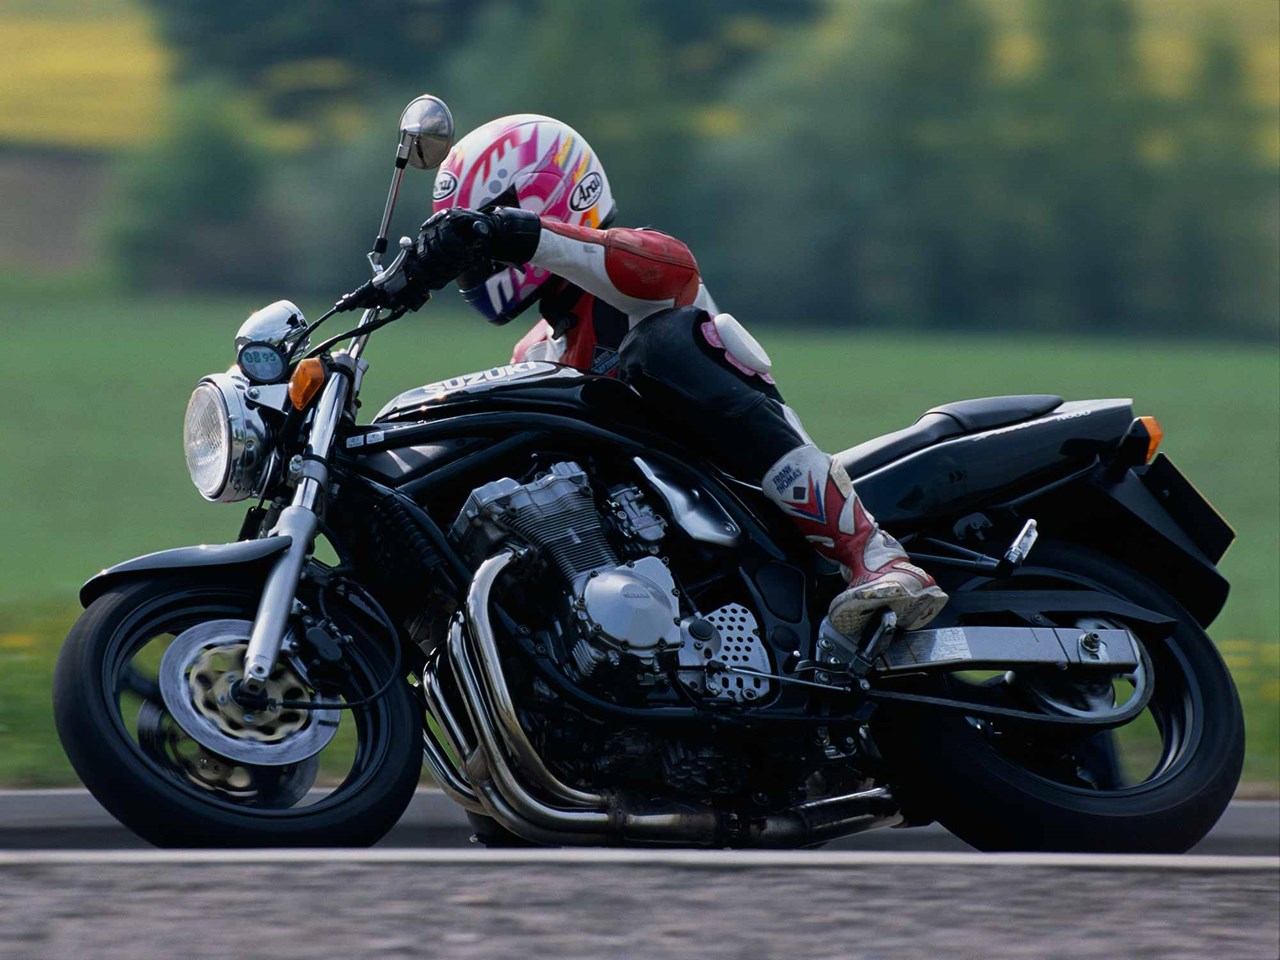 Suzuki GSF 600 Bandit : r/motorcycles